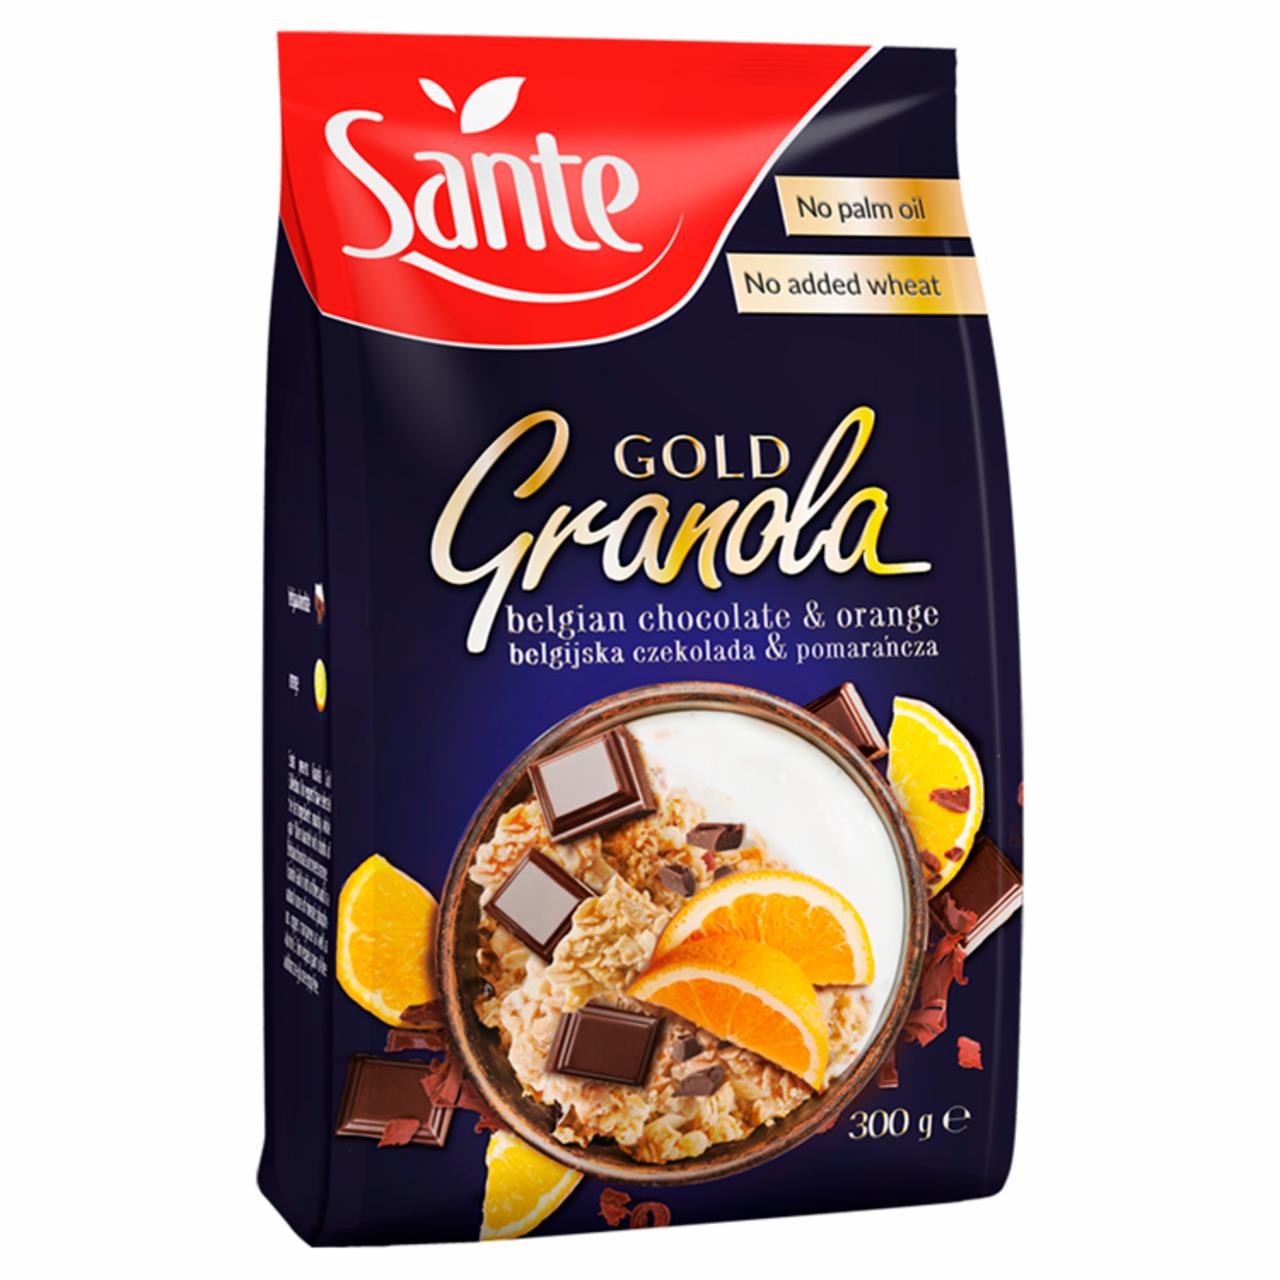 Zdjęcia - Sante Gold Granola belgijska czekolada & pomarańcza 300 g